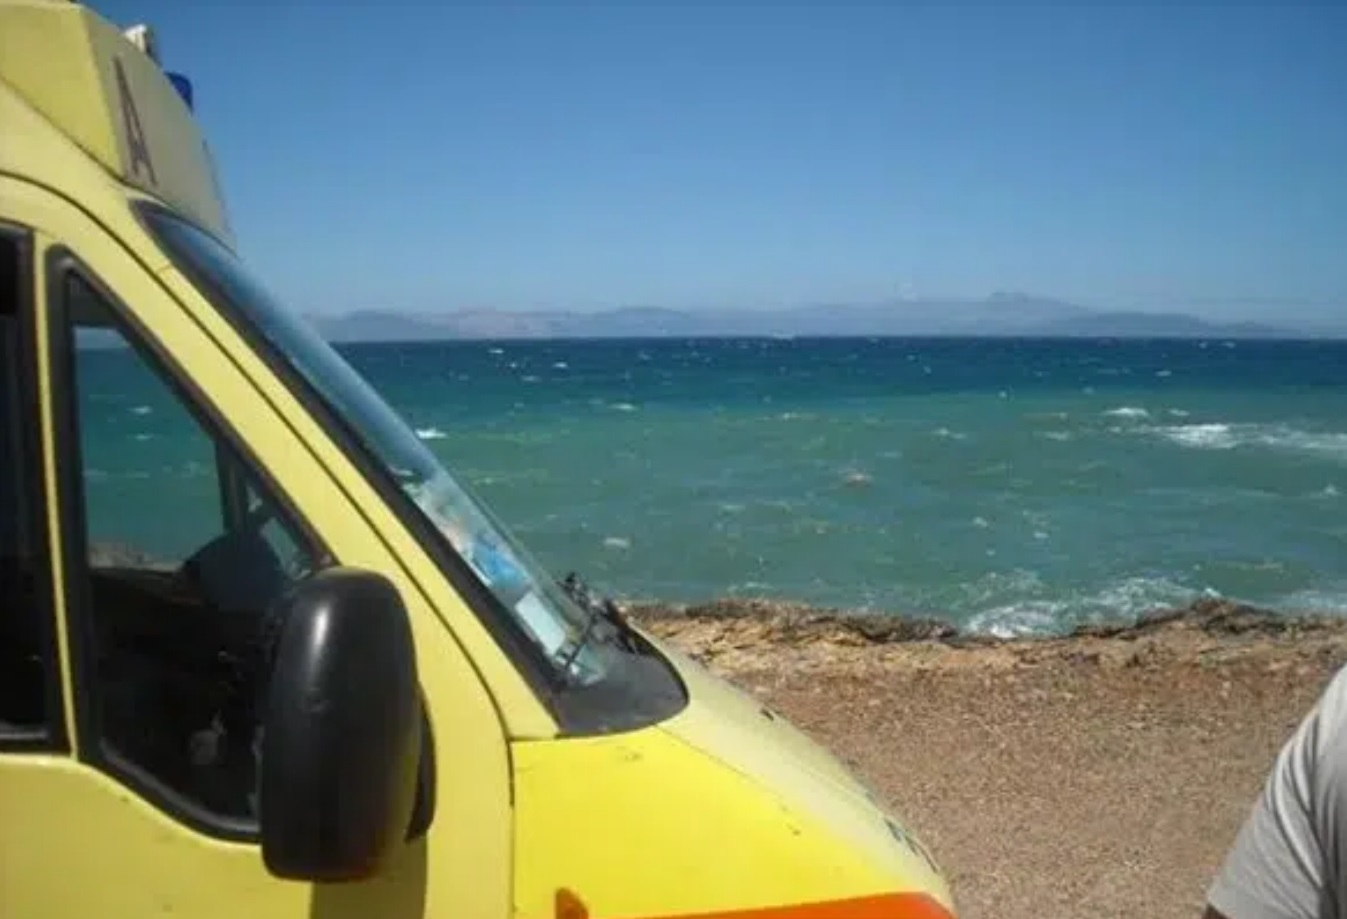 Θεσσαλονίκη: Δύο γυναίκες έχασαν τη ζωή τους σε παραλίες της Χαλκιδικής και της Κατερίνης